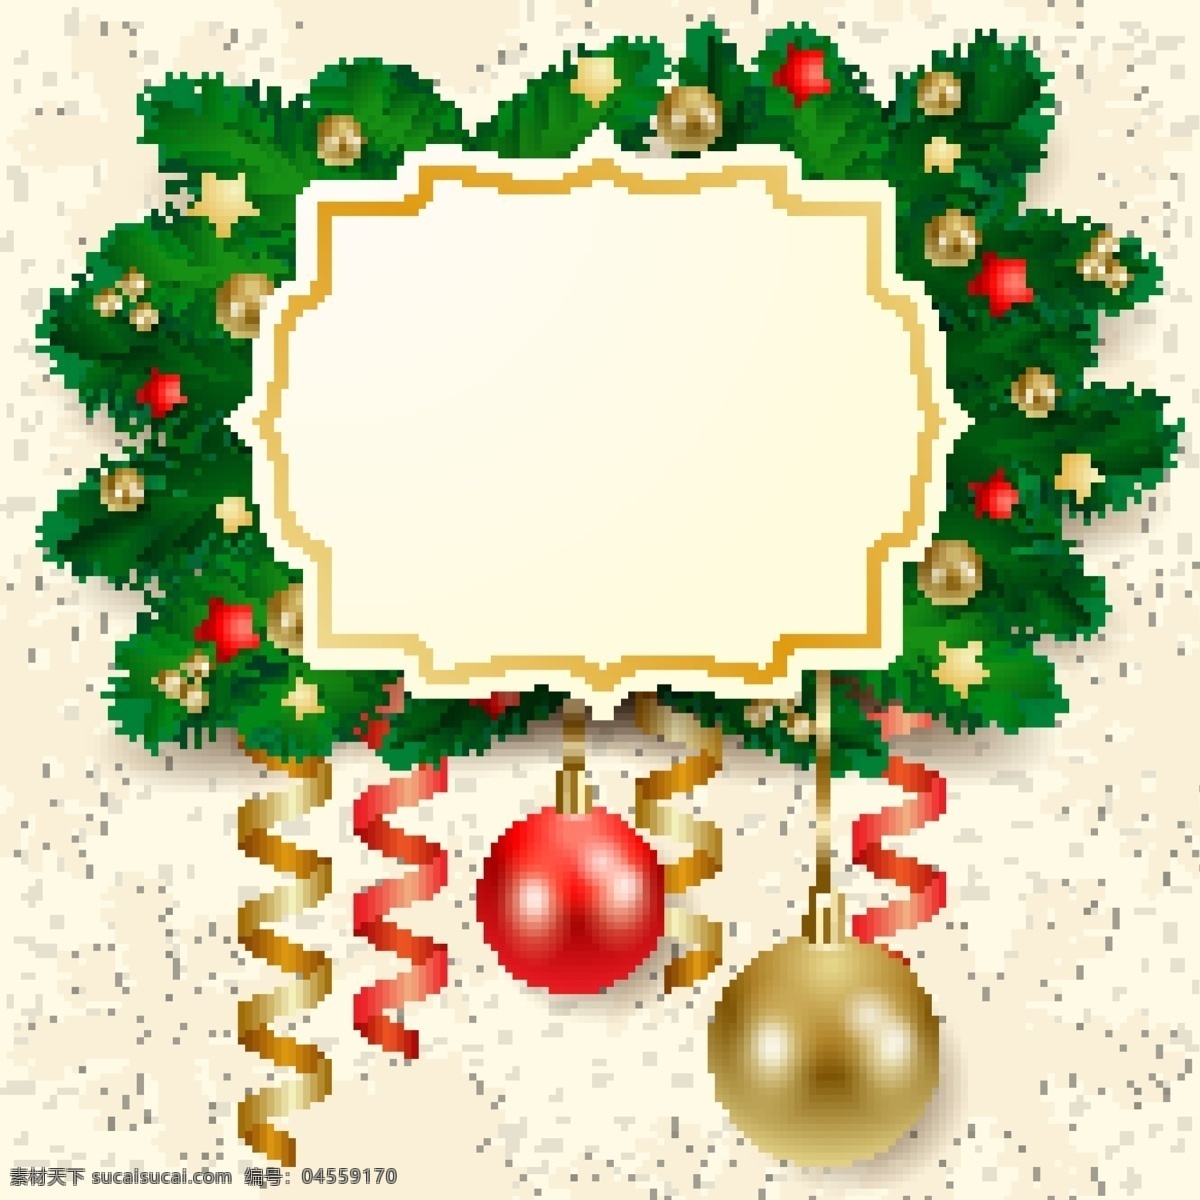 圣诞节 标签 贴纸 圣诞球 丝带 雪花 图标 树枝 圣诞树 圣诞节背景 圣诞节素材 节日素材 底纹 背景 底纹边框 矢量素材 白色